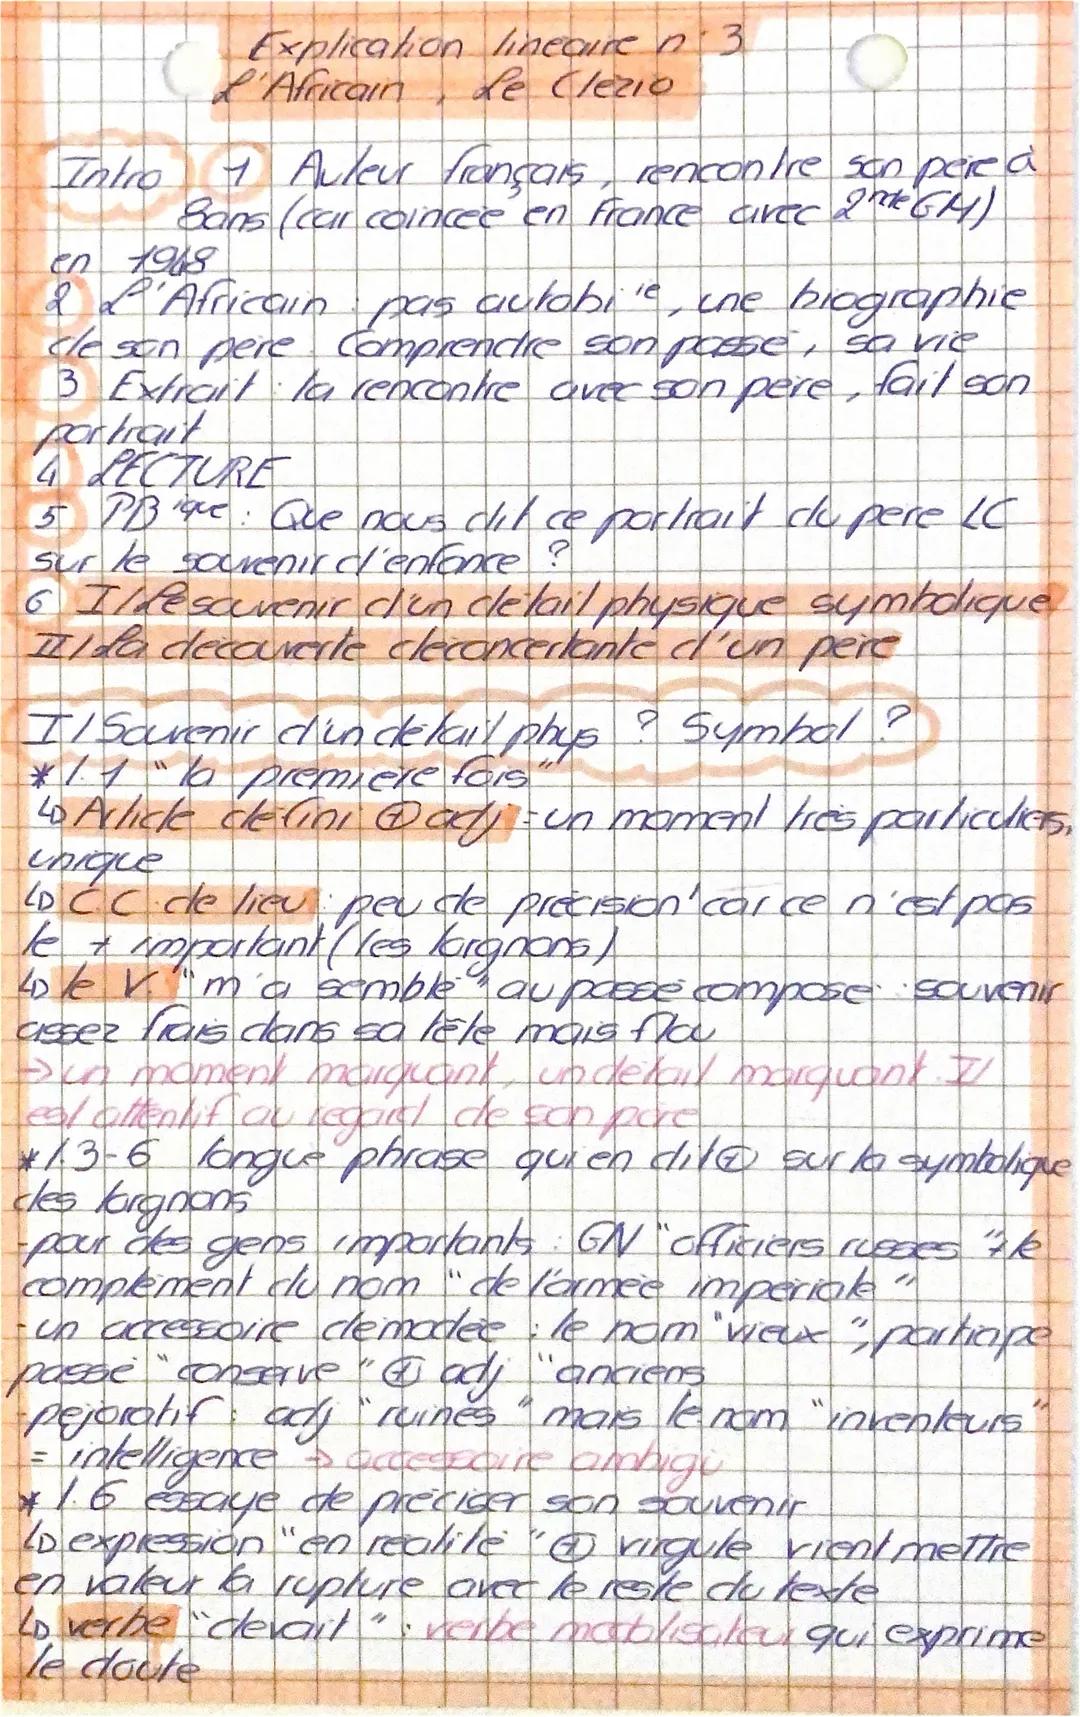 Intro
Explication
L'Africain
linecure in 3
Le Clézio
1 Auteur français rencontre son poie à
Bons (car coincée en France avec 2tk GH)
en 1968